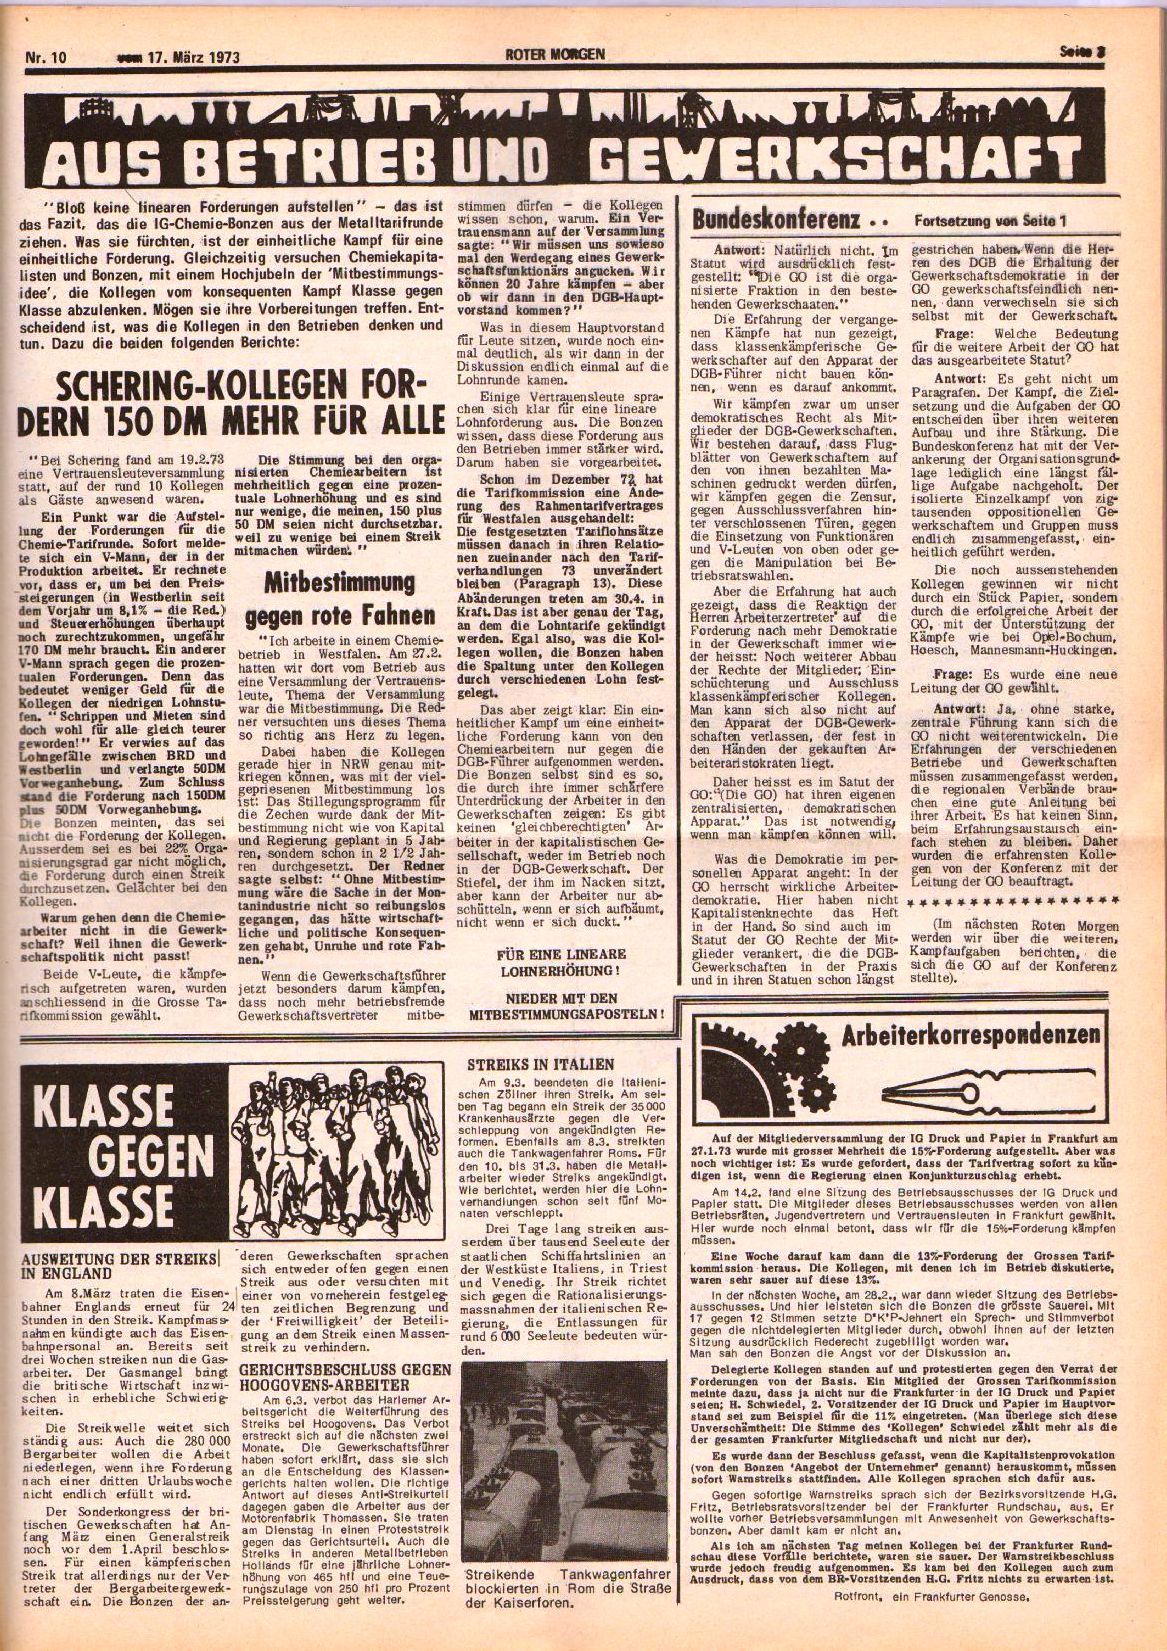 Roter Morgen, 7. Jg., 17. März 1973, Nr. 10, Seite 3